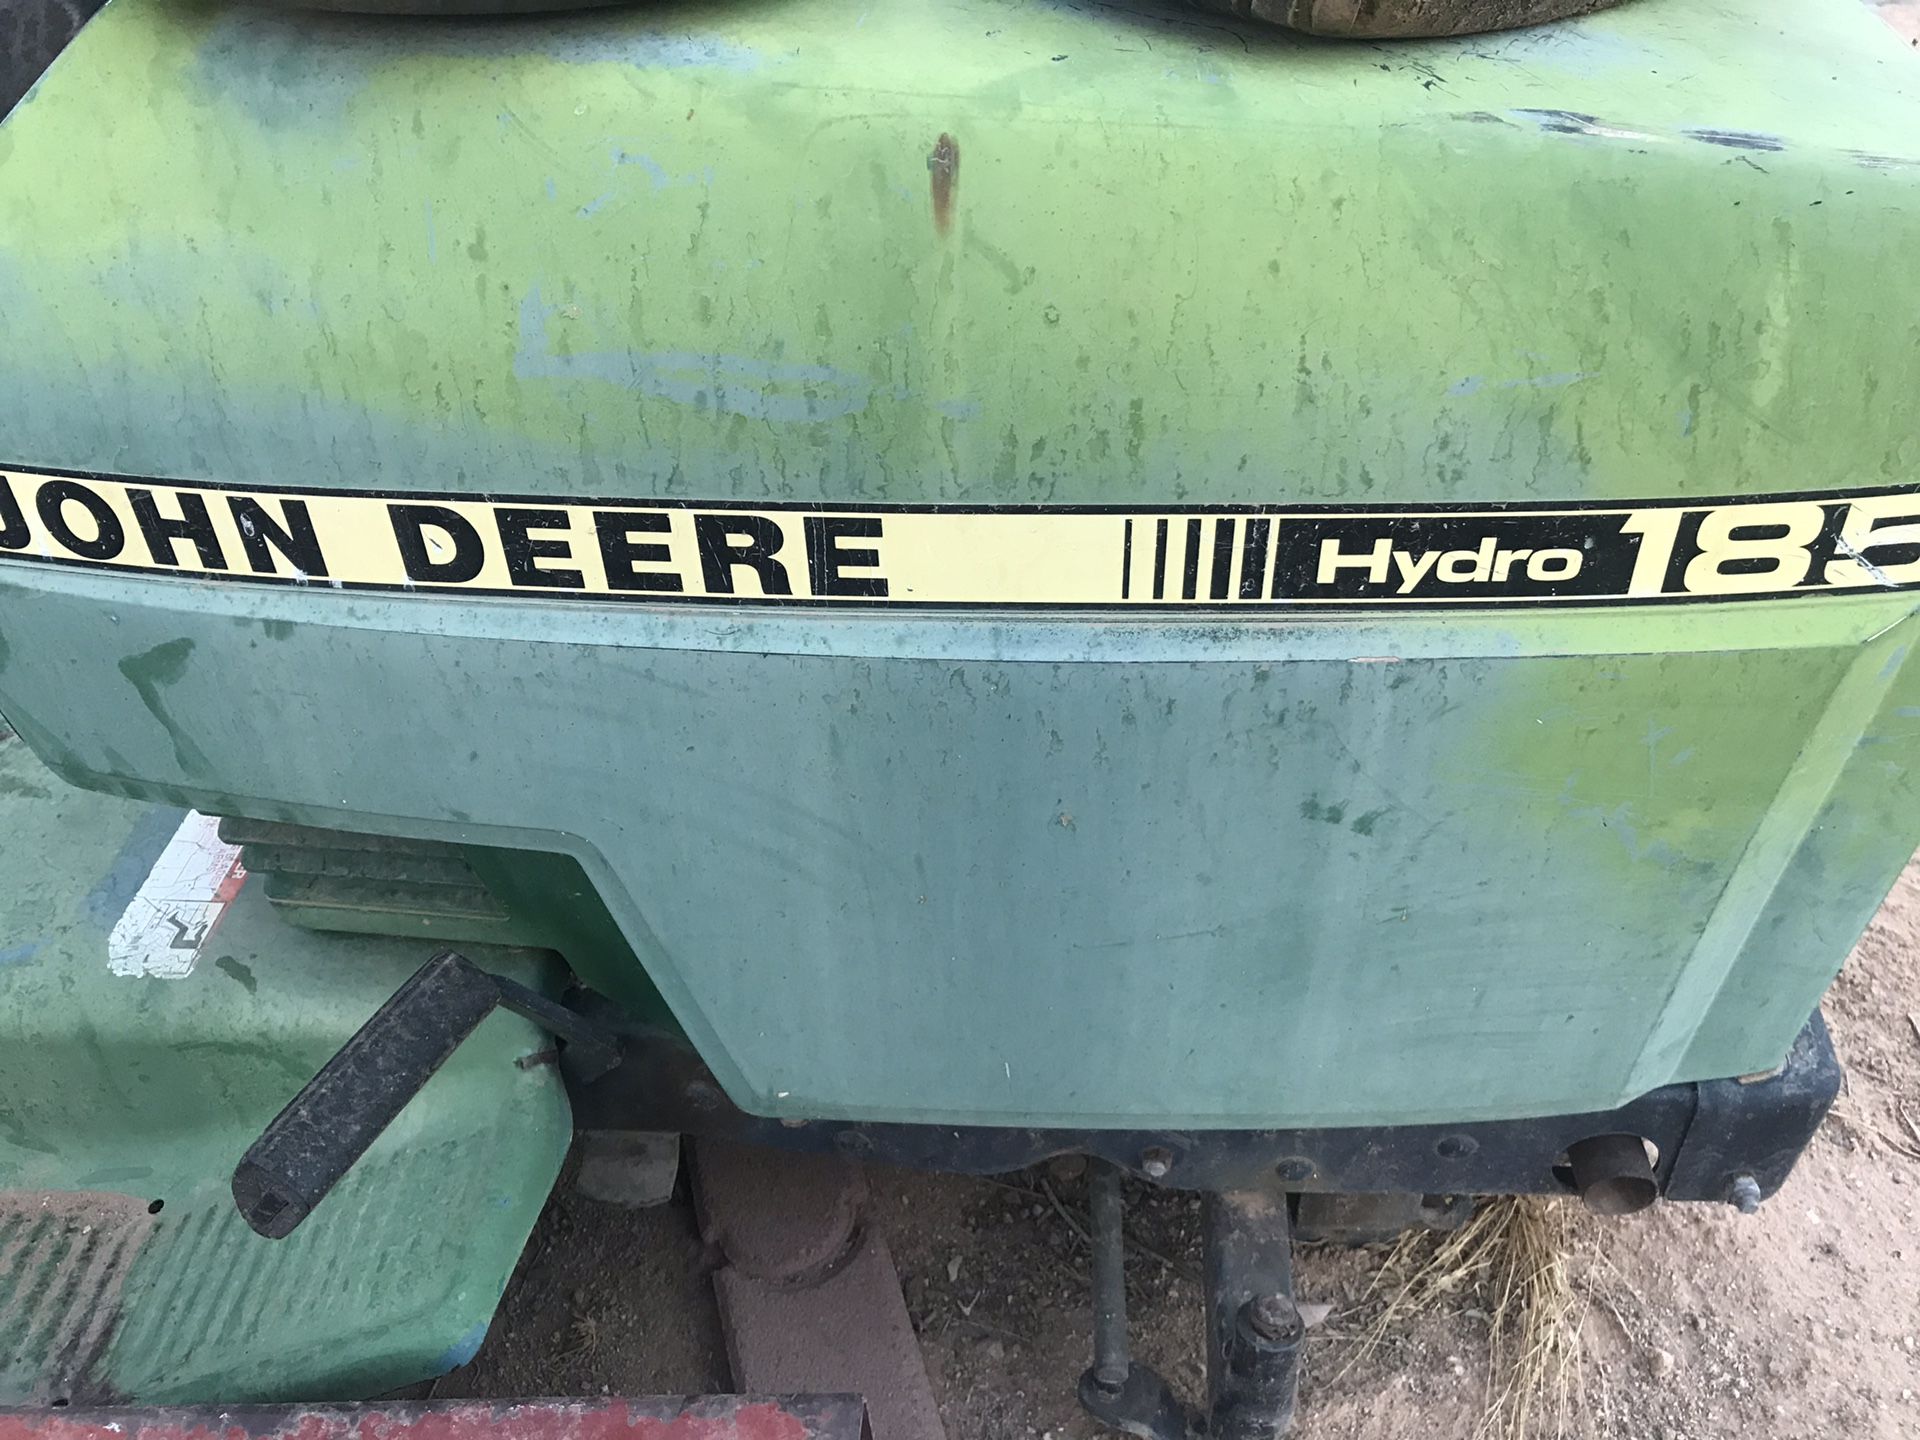 John Deere lawn mower